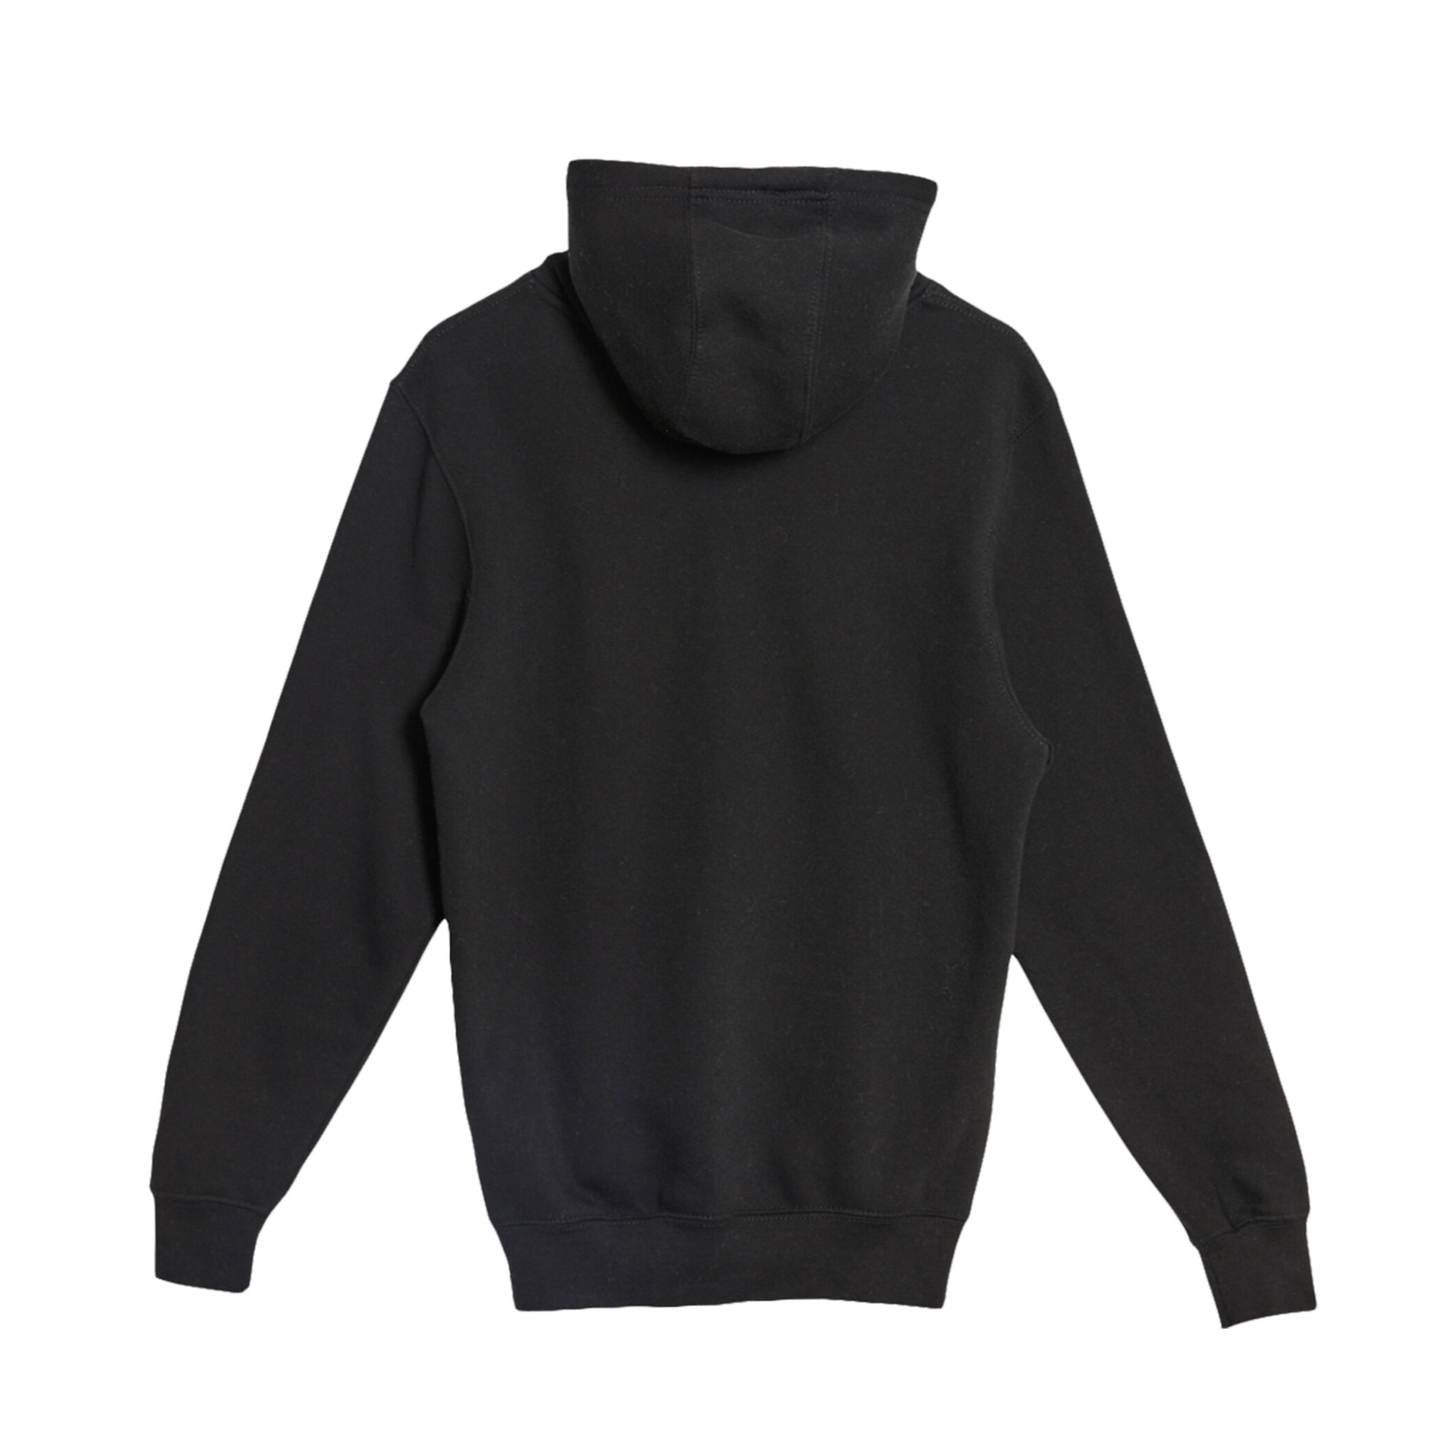 Wolf Athletics - Premium Unisex Hooded Pocket Sweatshirt Black